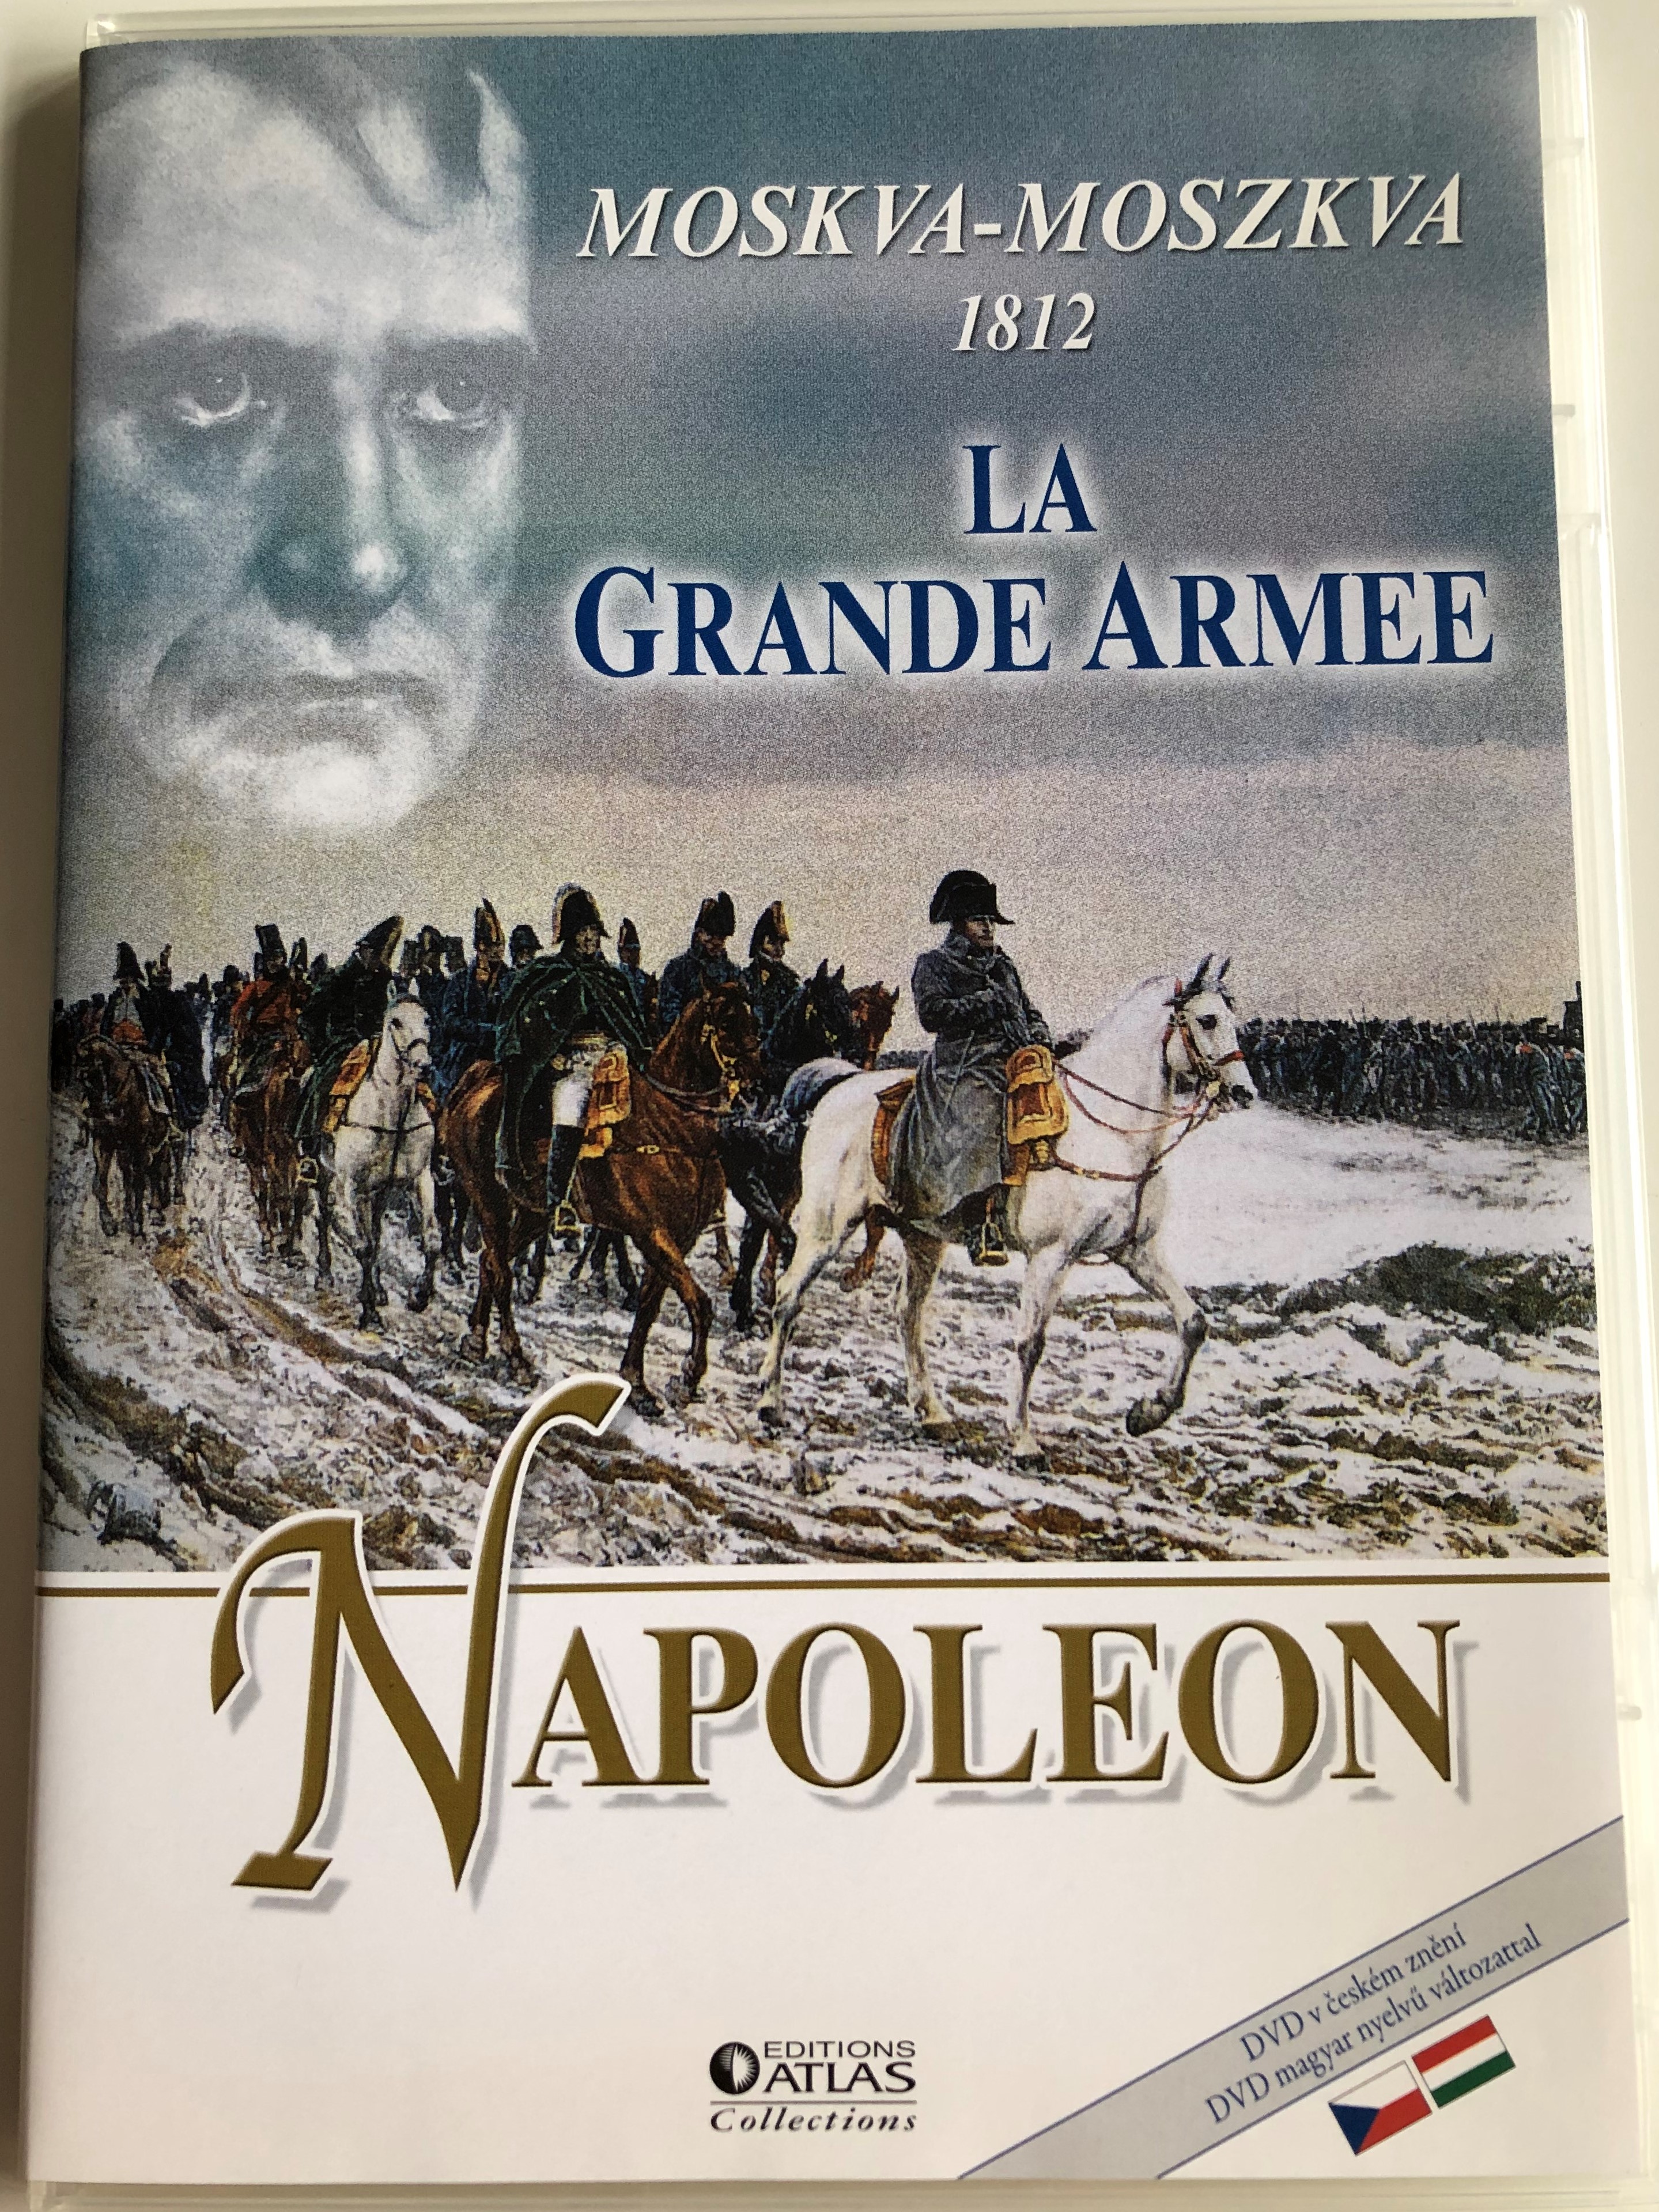 napoleon-la-grande-armee-dvd-2010-moskva-1812-napoleon-moszkva-1812-napoleon-tja-moszkv-ba-1.jpg